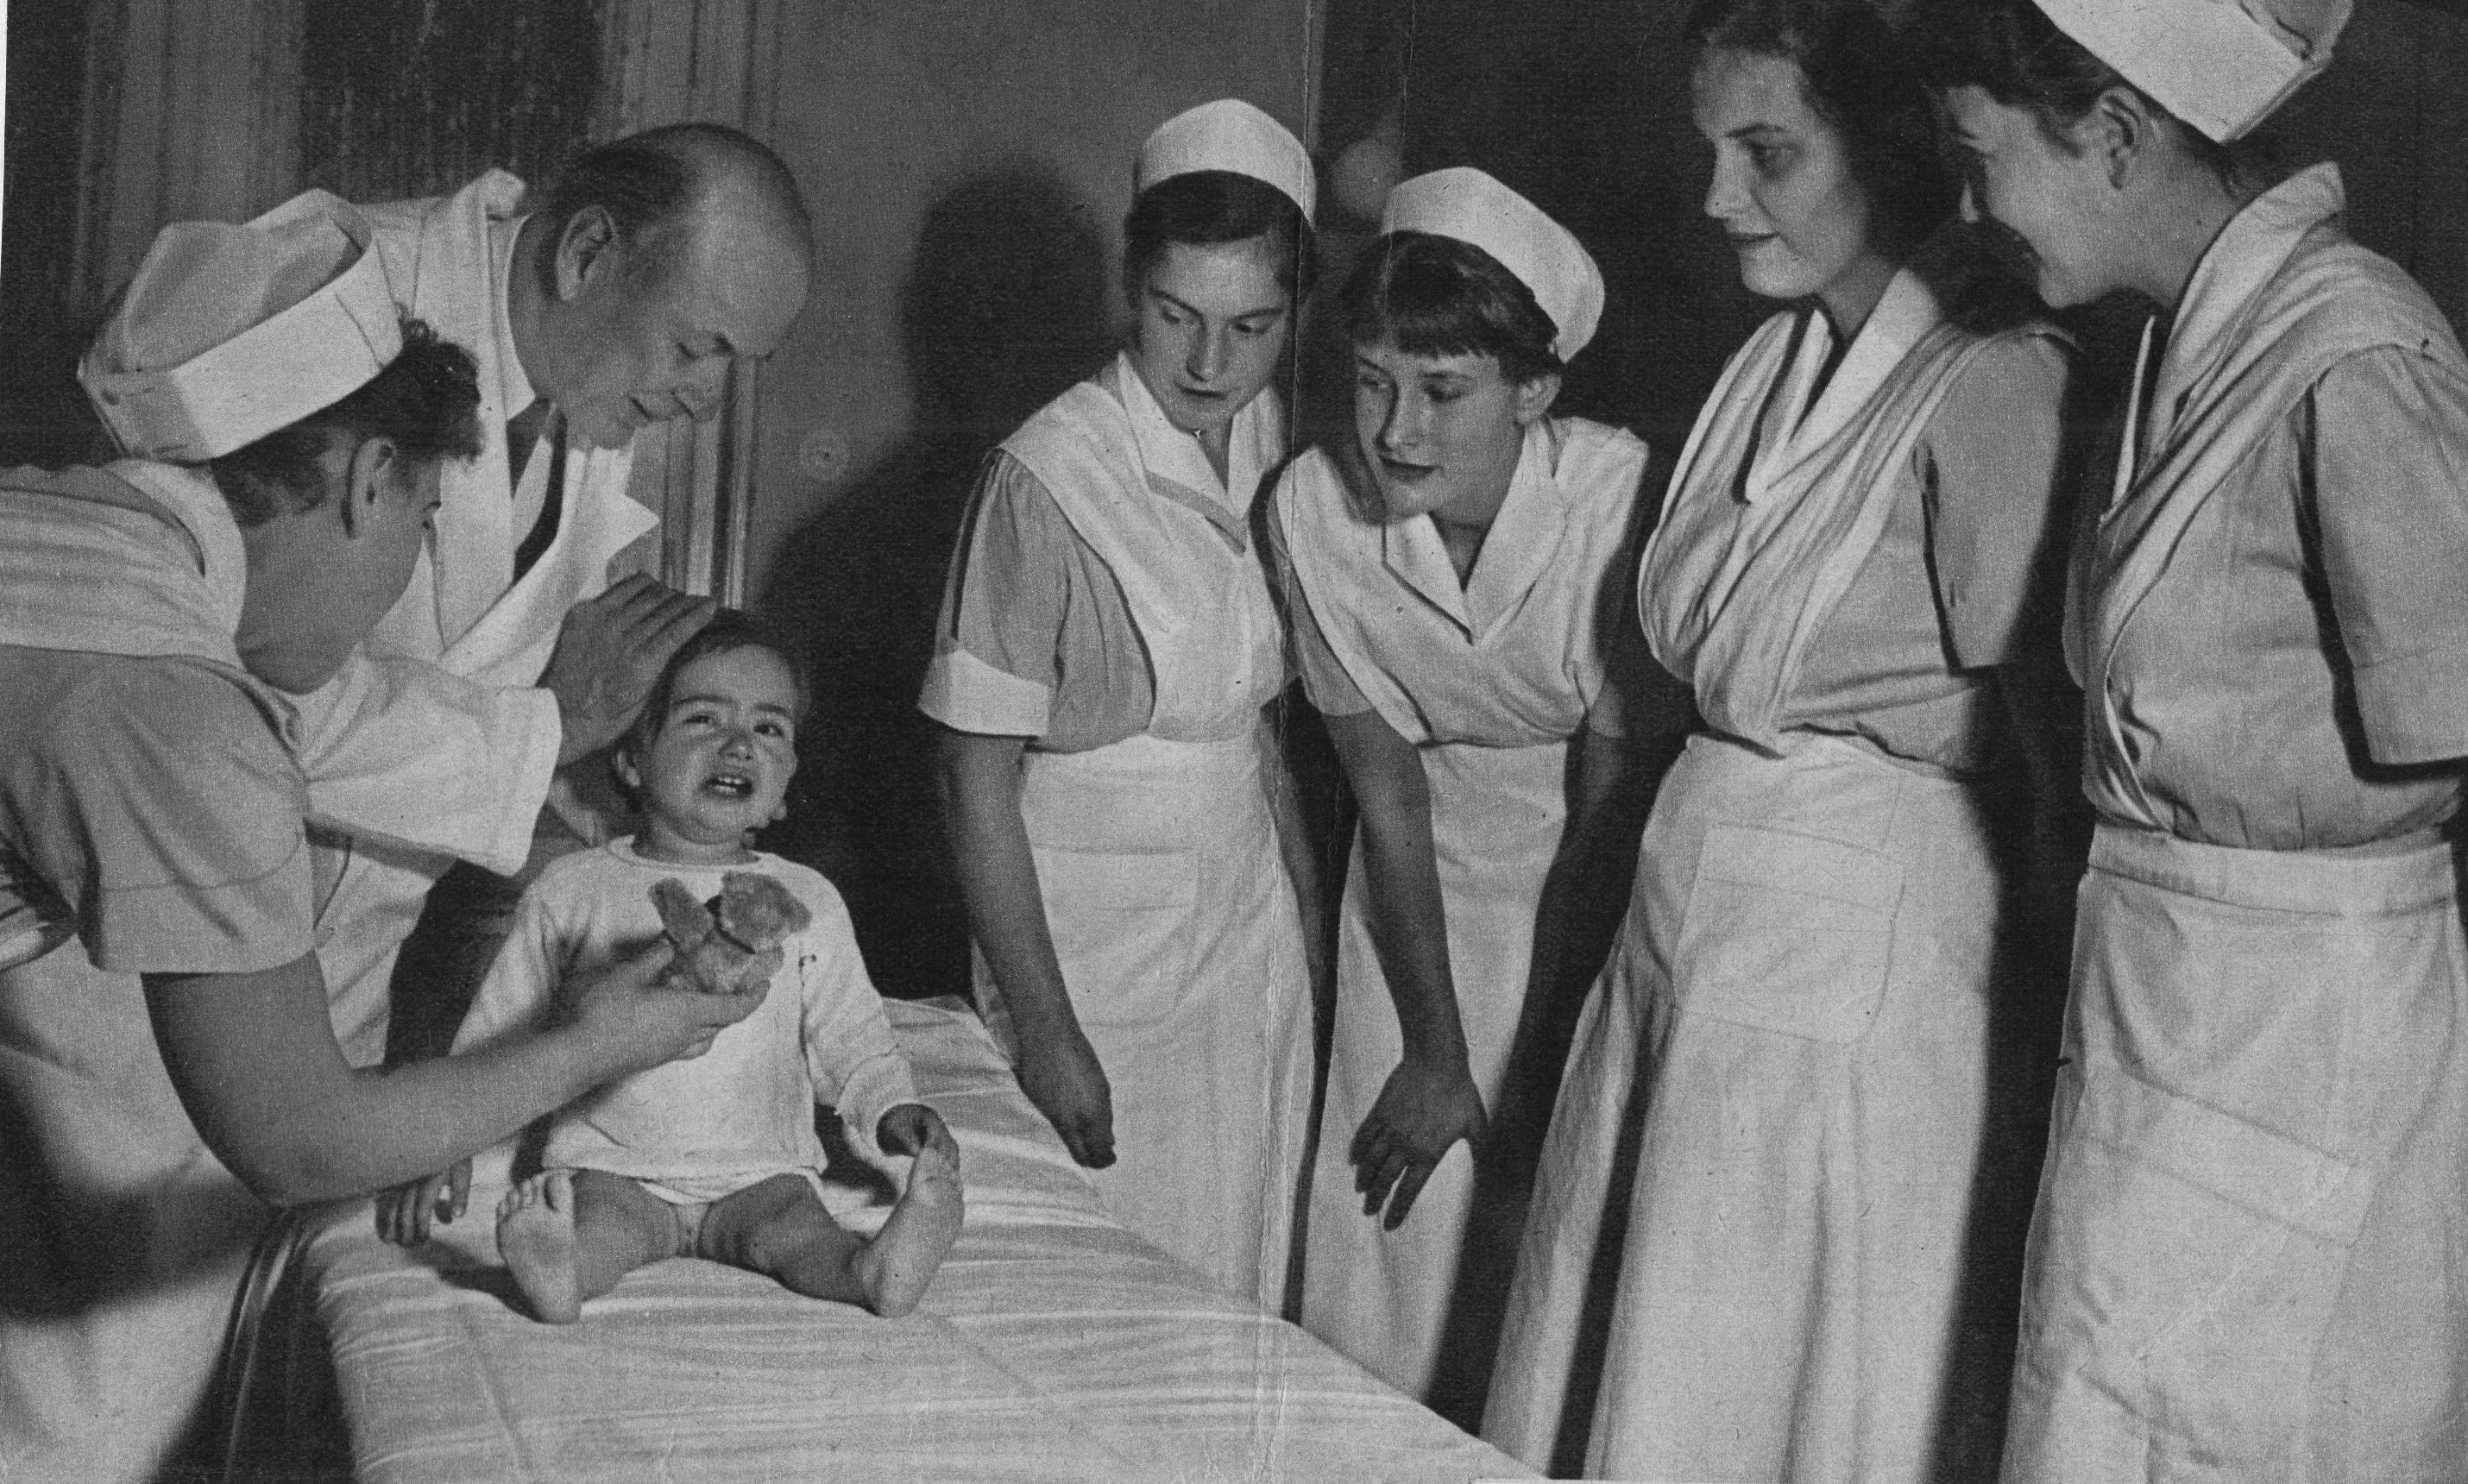 Узкая киска раздетой медсестры в морге 20 фото эротики